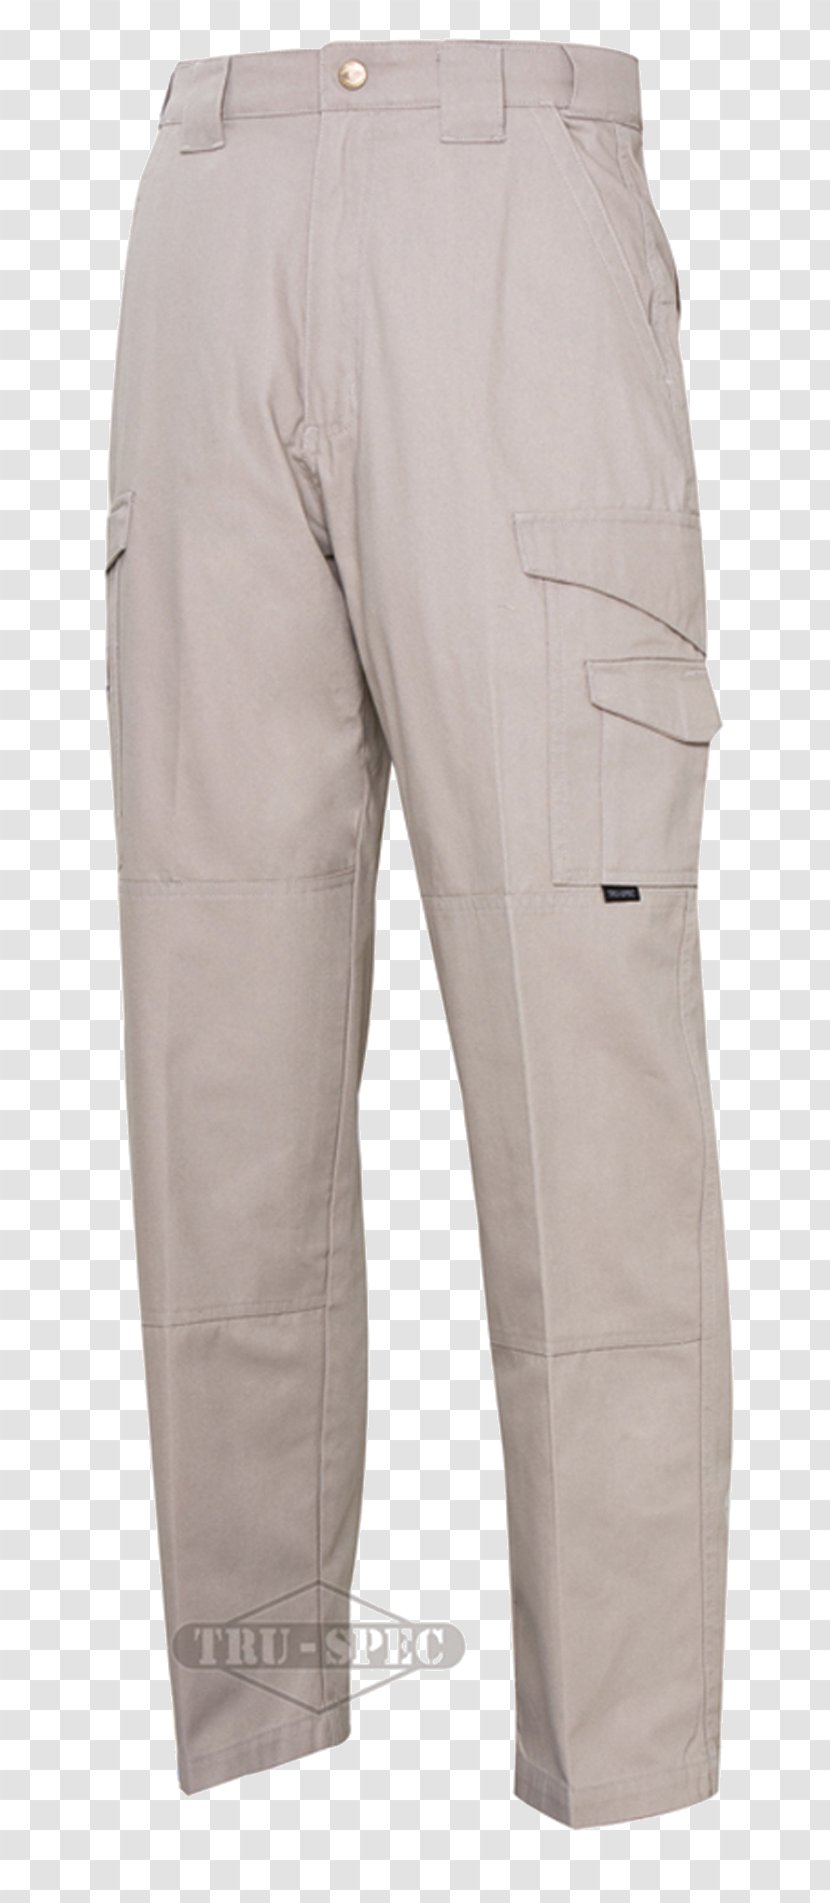 TRU-SPEC Tactical Pants Clothing Military Tactics - Tactic - Pocket Transparent PNG